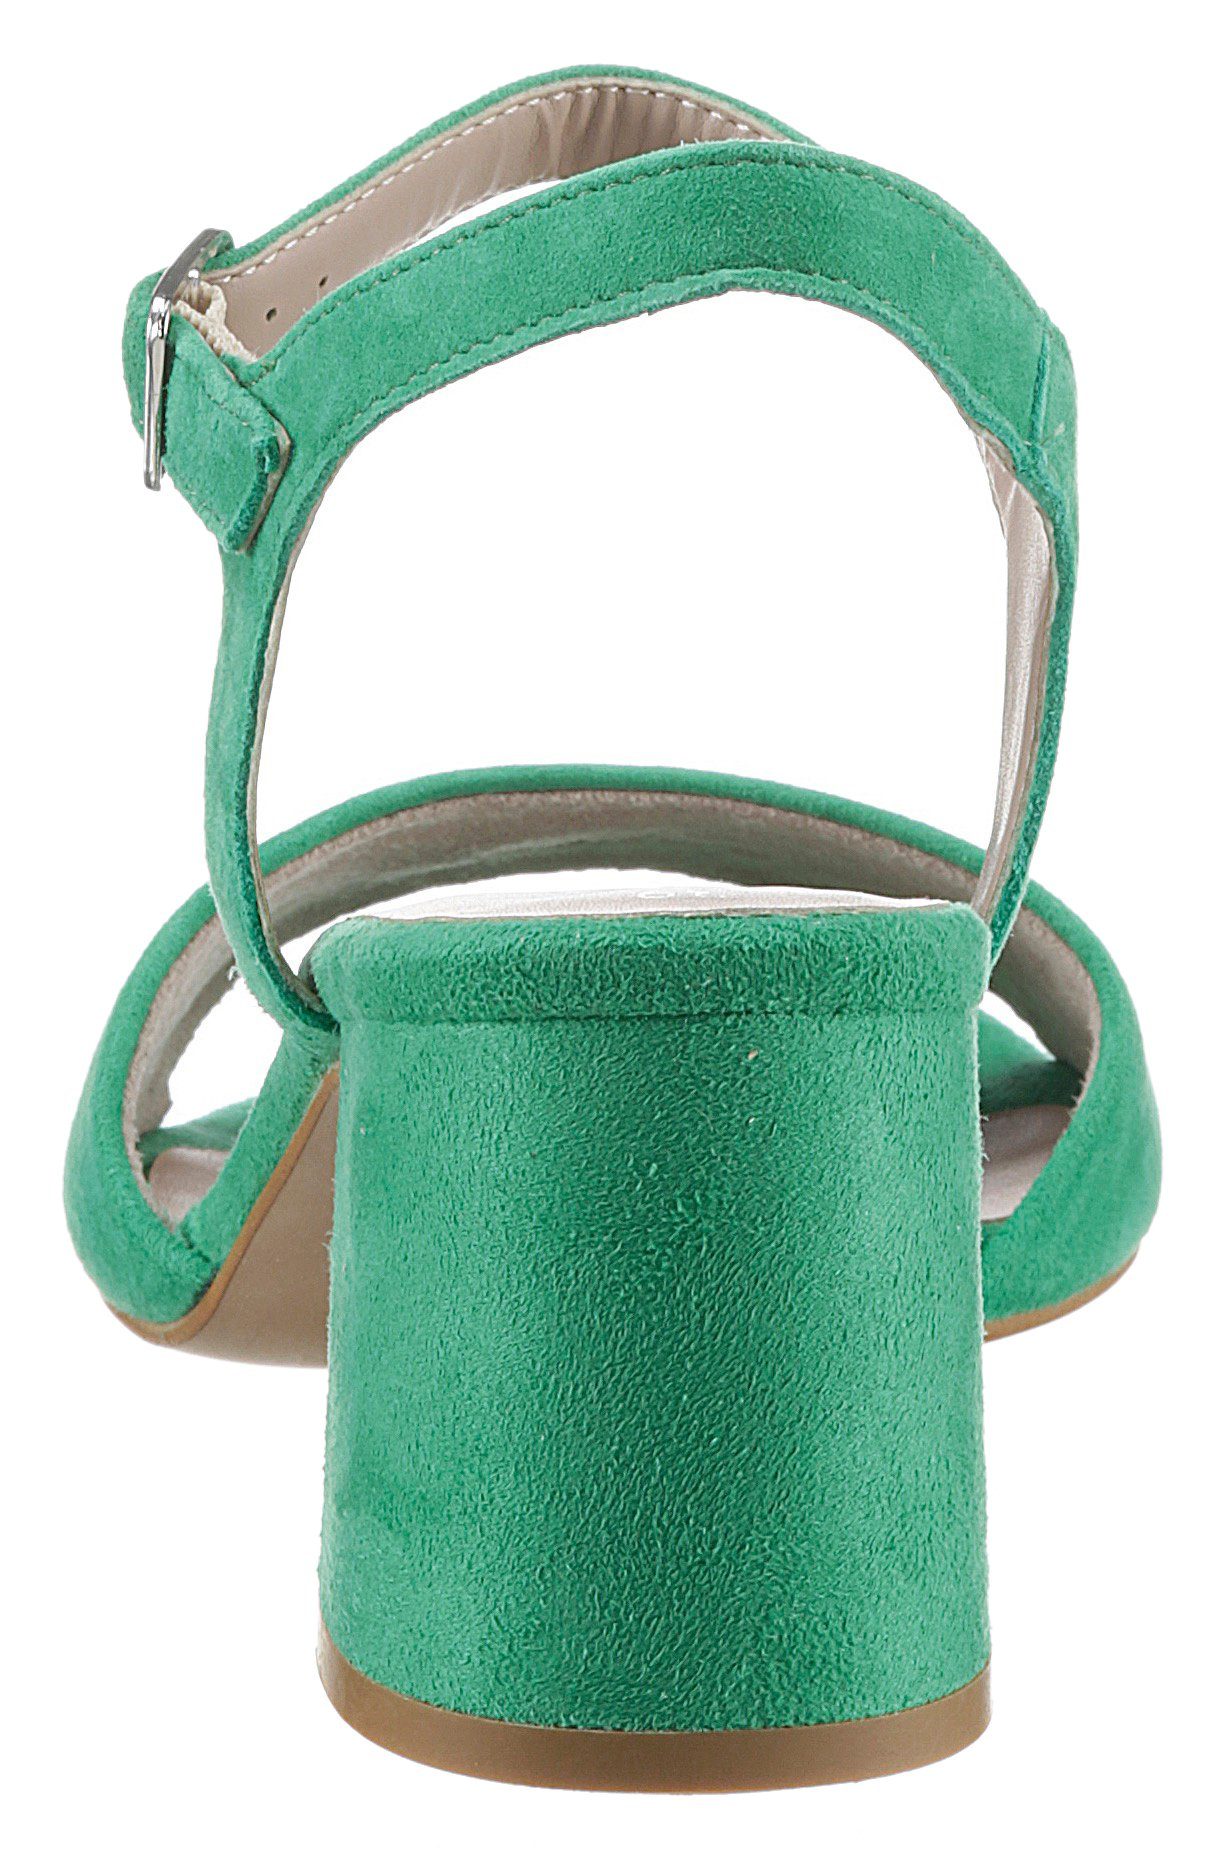 Tamaris Sandalette Touch It-Ausstattung grün mit